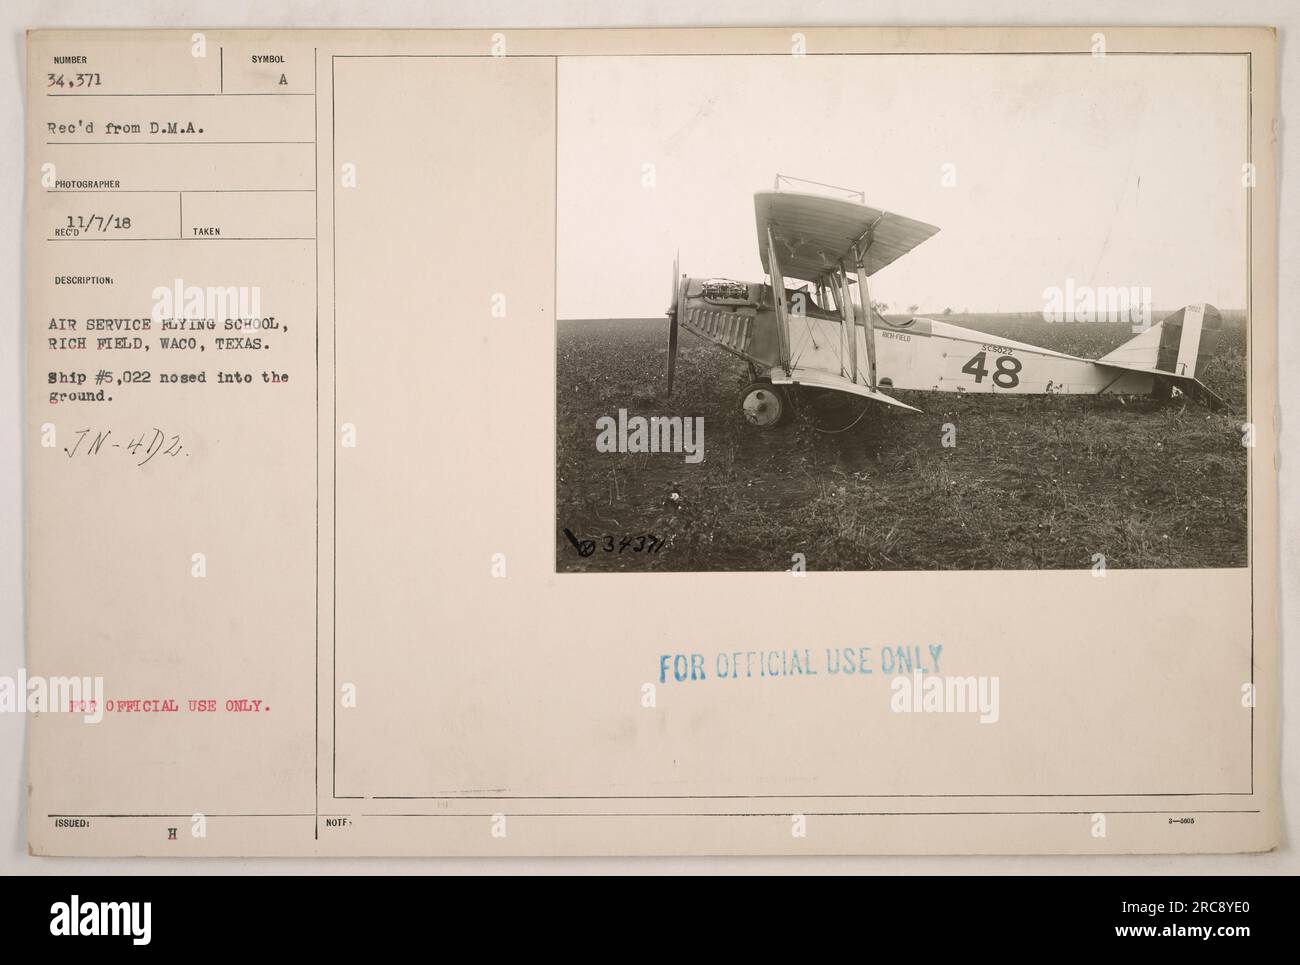 Didascalia: "Immagine di un incidente aereo a Rich Field, Waco, Texas durante la prima guerra mondiale L'incidente coinvolse la nave n. 5.022, un aereo JN-4D2 della Air Service Flying School. L'aereo è visto a terra. Data: 7 gennaio 1918. SOLO PER USO UFFICIALE." Foto Stock